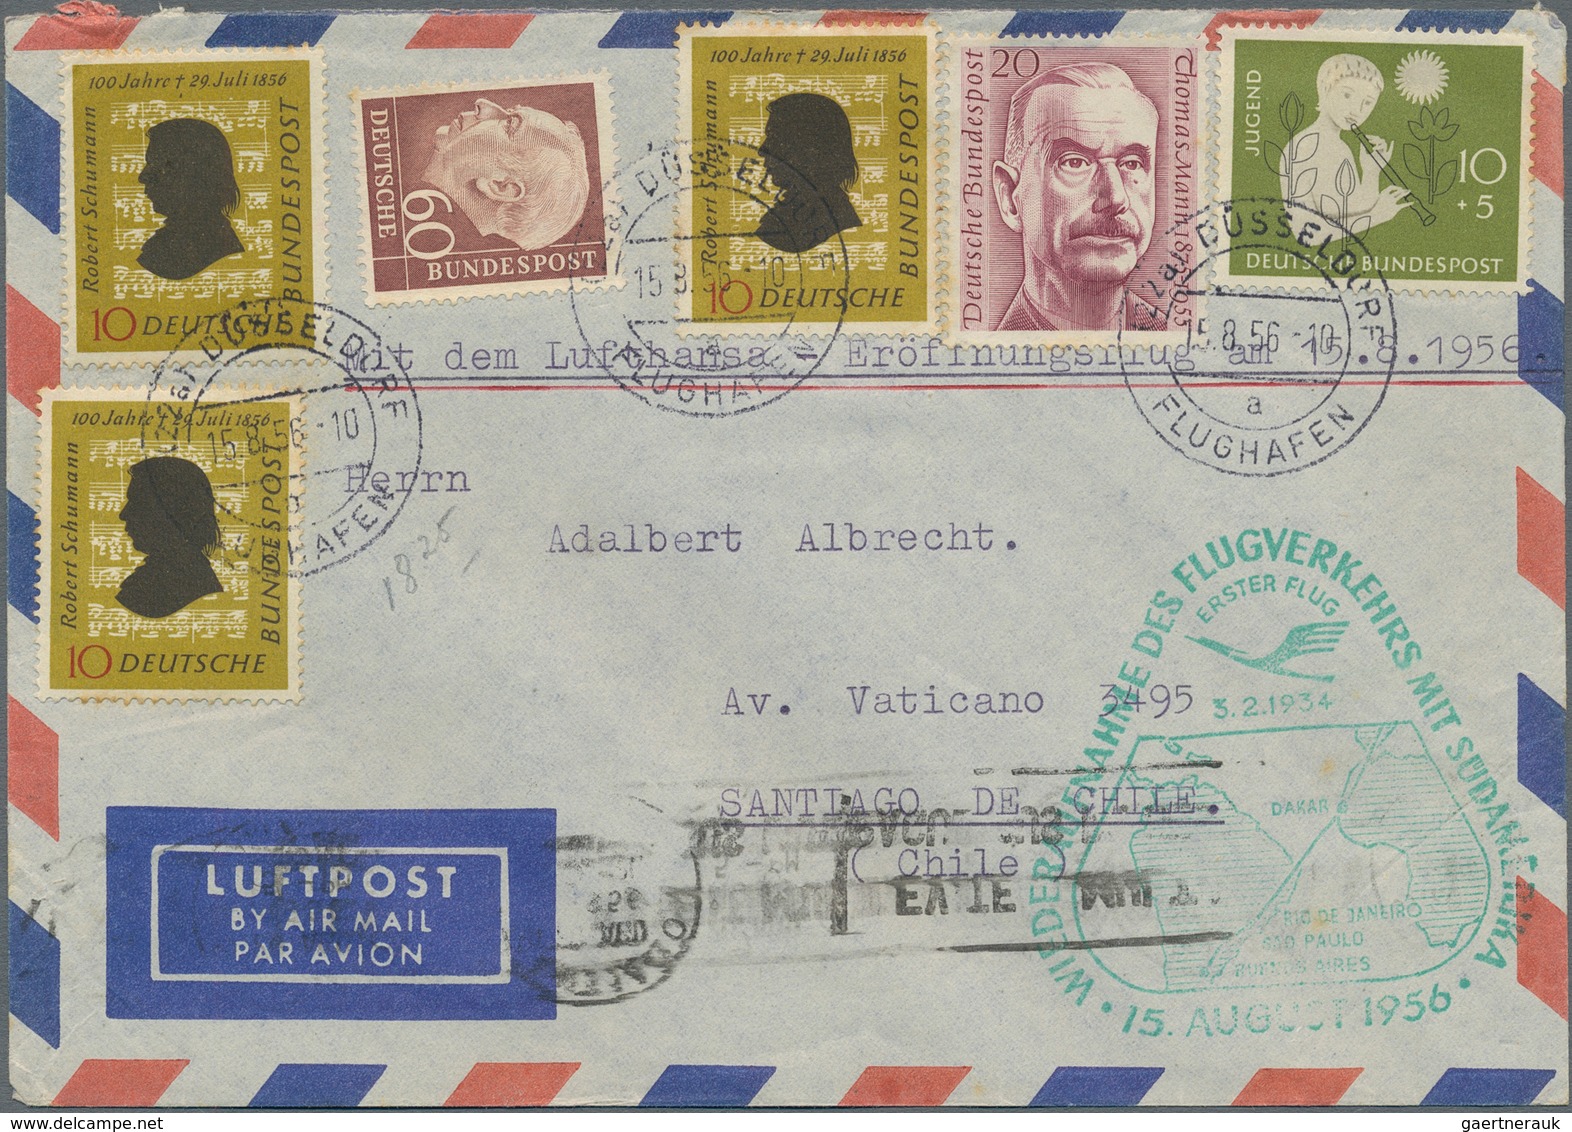 Bundesrepublik Deutschland: 1955/1998, Post nach Übersee, Partie von ca. 270 Briefen und Karten nach